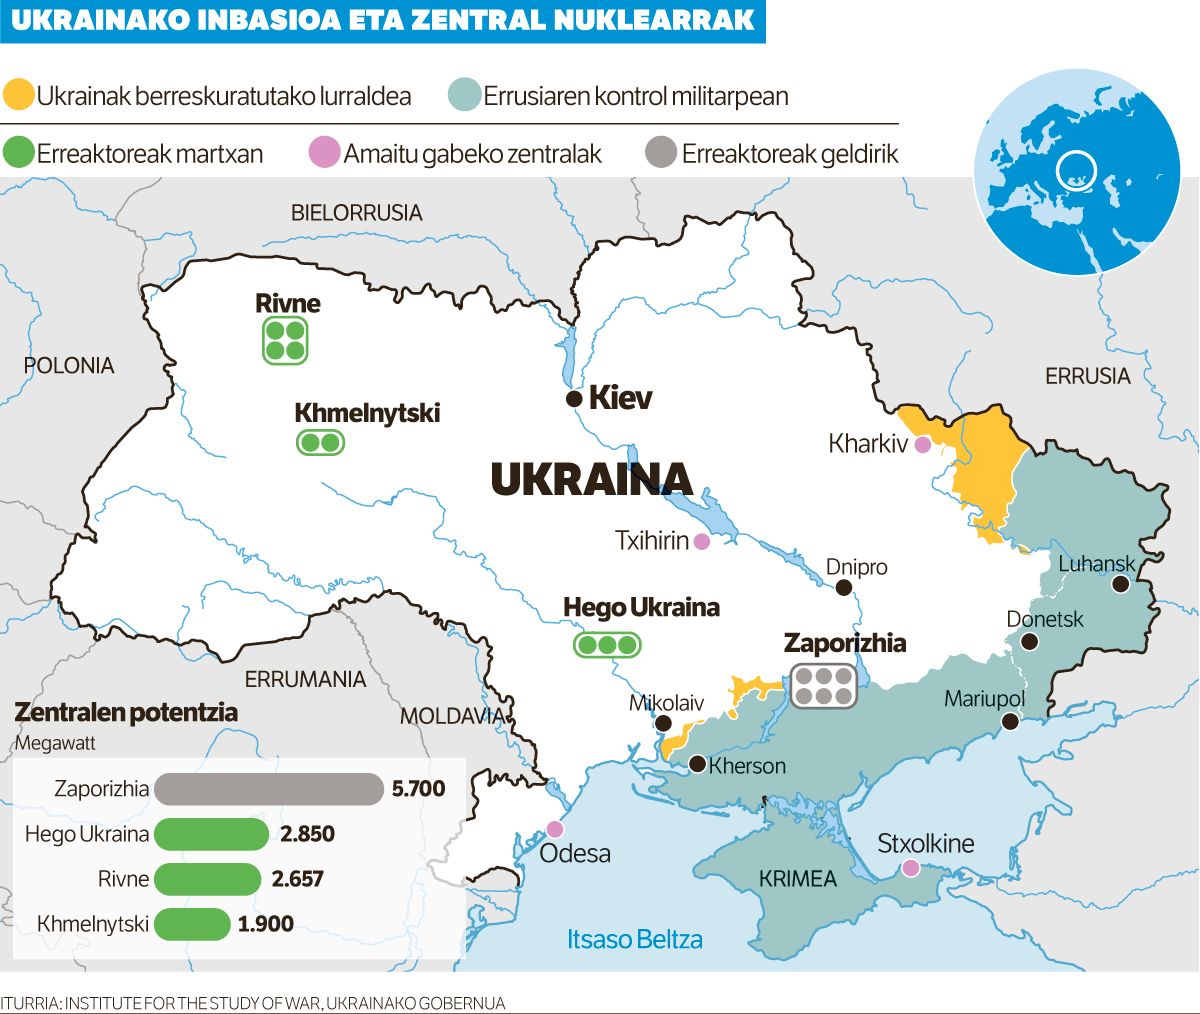 Ukrainako beste zentral nuklear bati eraso egitea egotzi dio Kievek Errusiari.